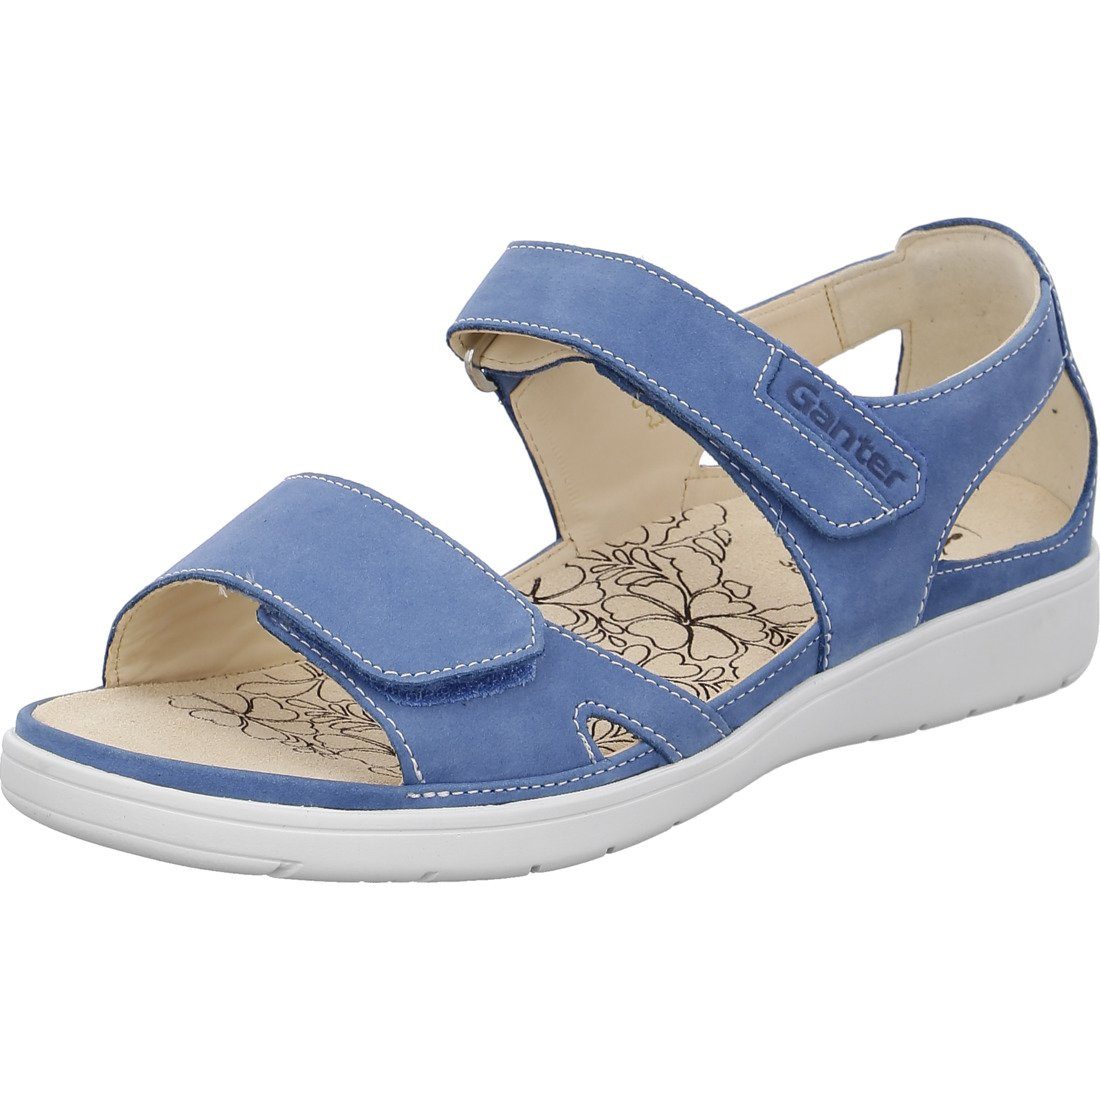 Ganter Ganter Schuhe, Sandalette Gina - Leder Damen Sandalette blau 048805